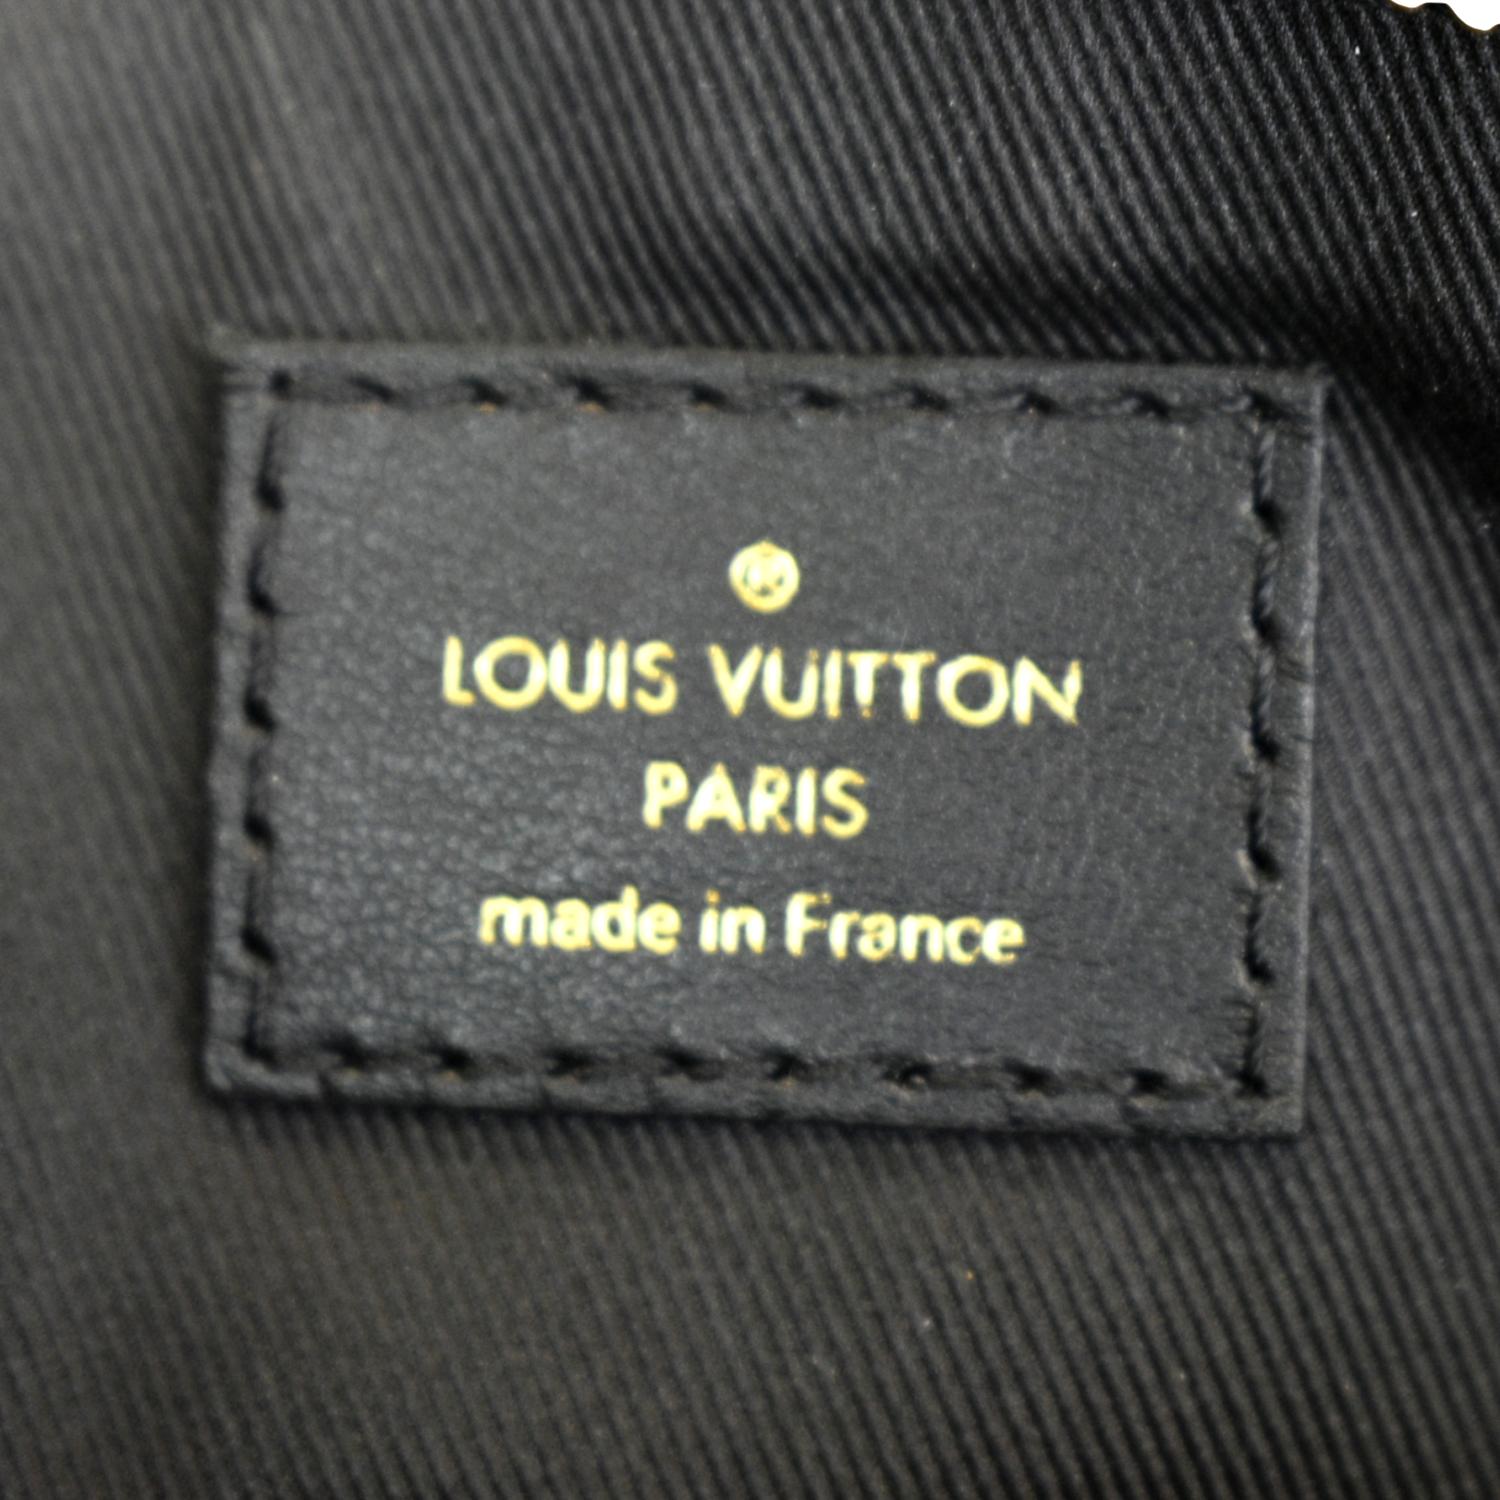 Shop Louis Vuitton Odéon Pm (N50064) by design◇base